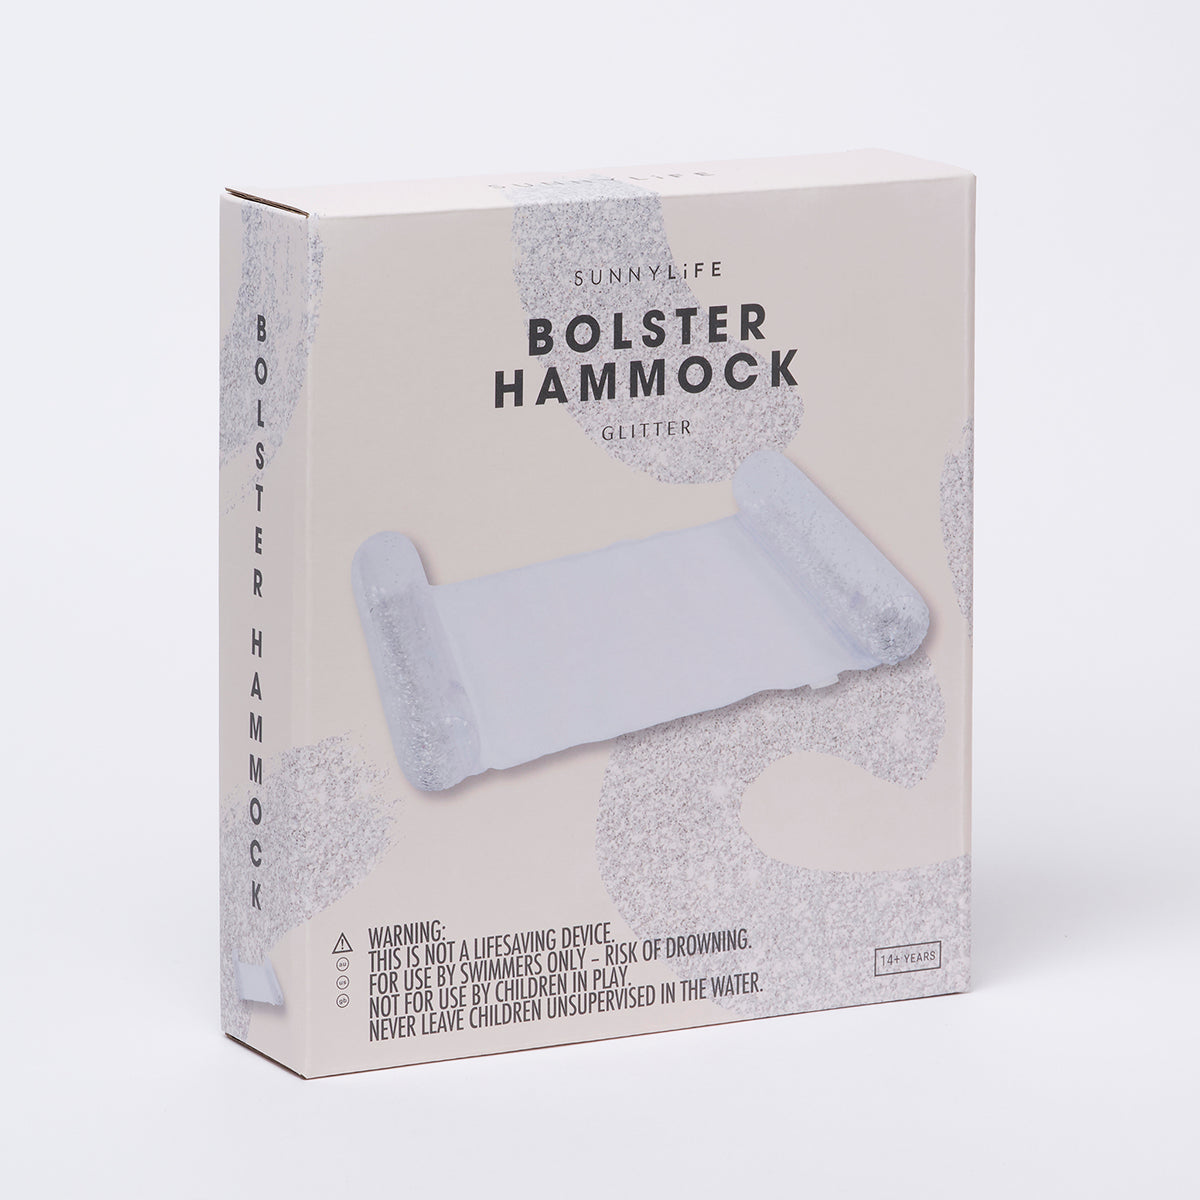 SUNNYLiFE Bolster Hammock Float Glitter